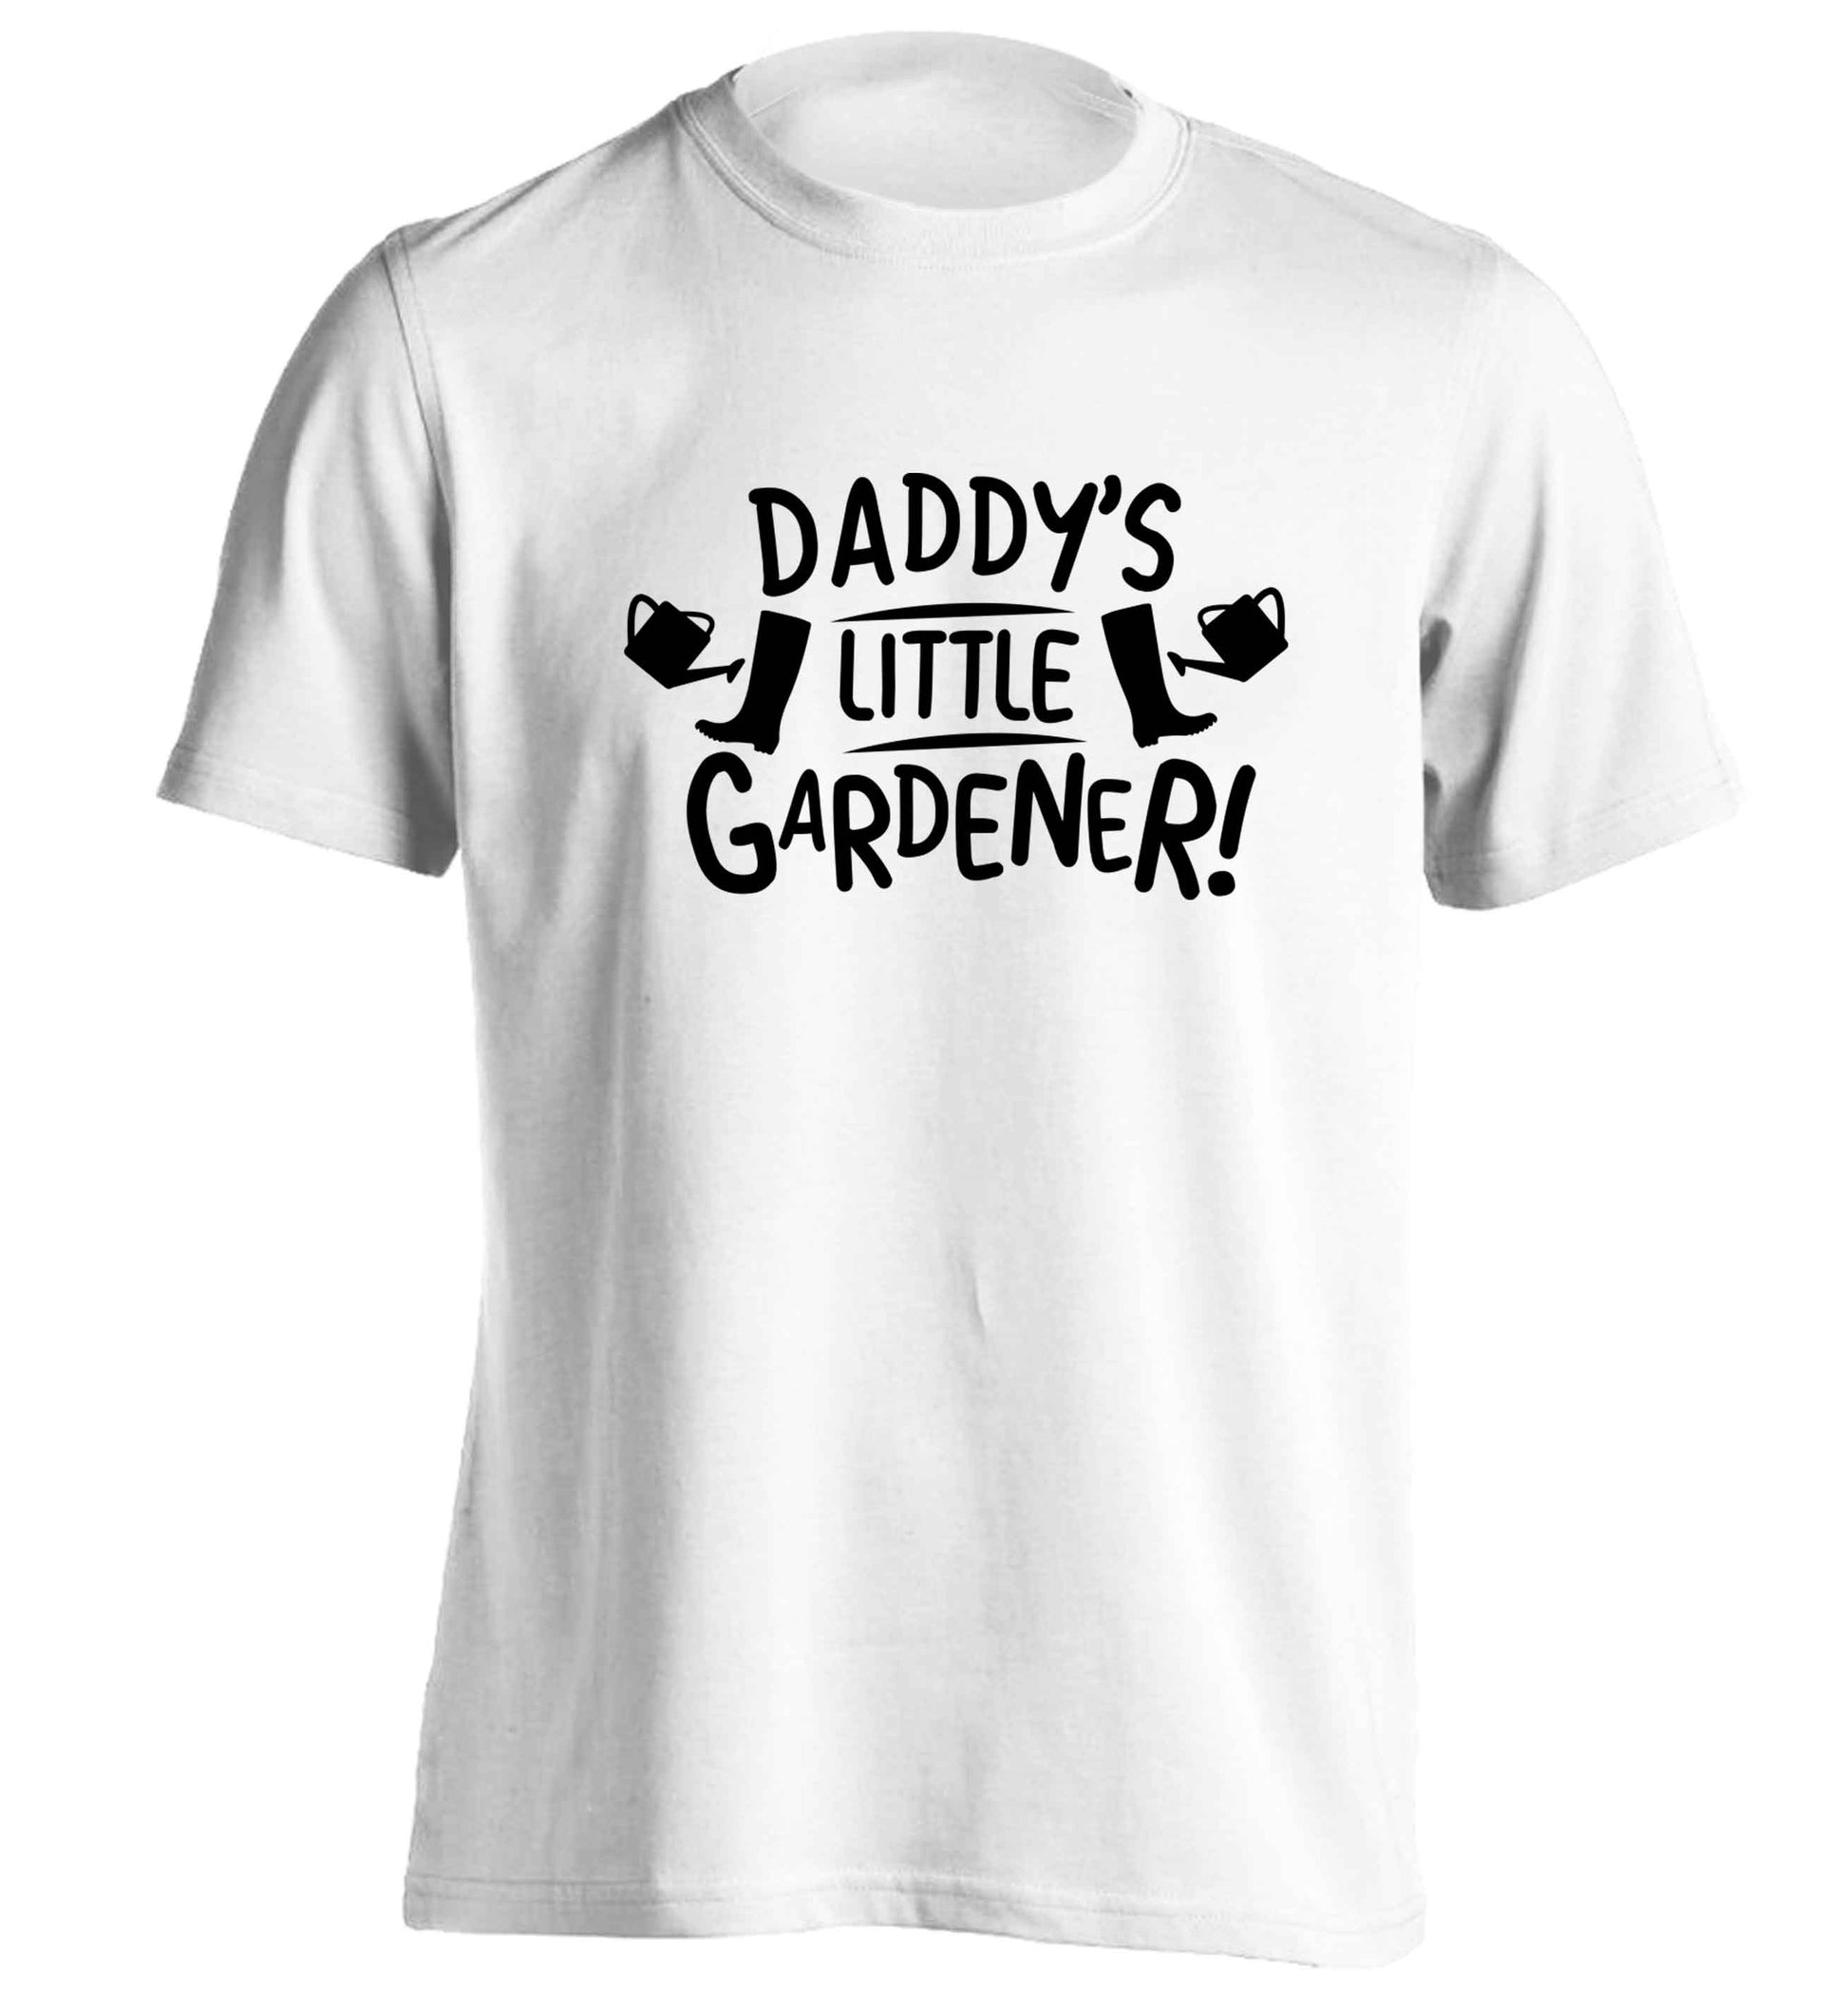 Daddy's little gardener adults unisex white Tshirt 2XL